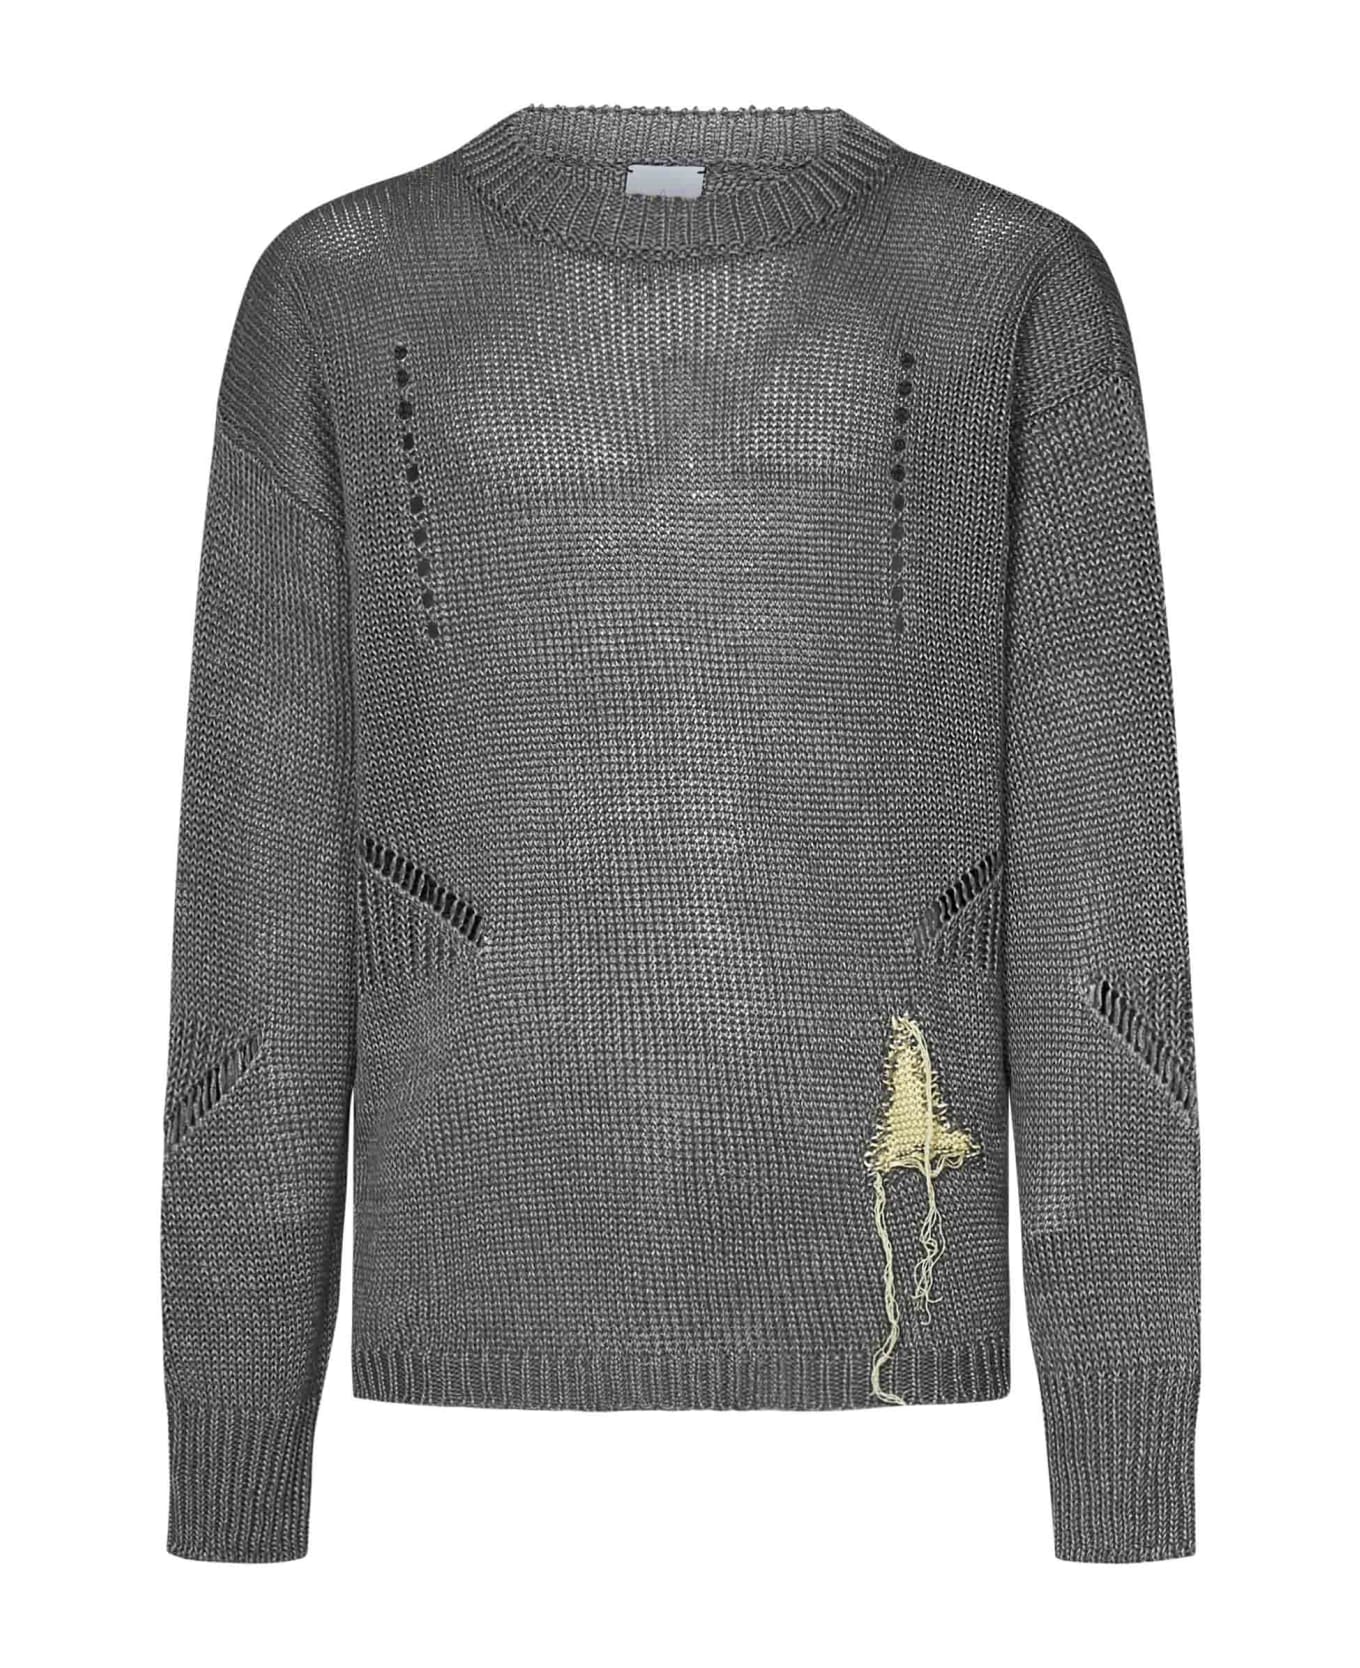 ROA Sweater - Grey ニットウェア